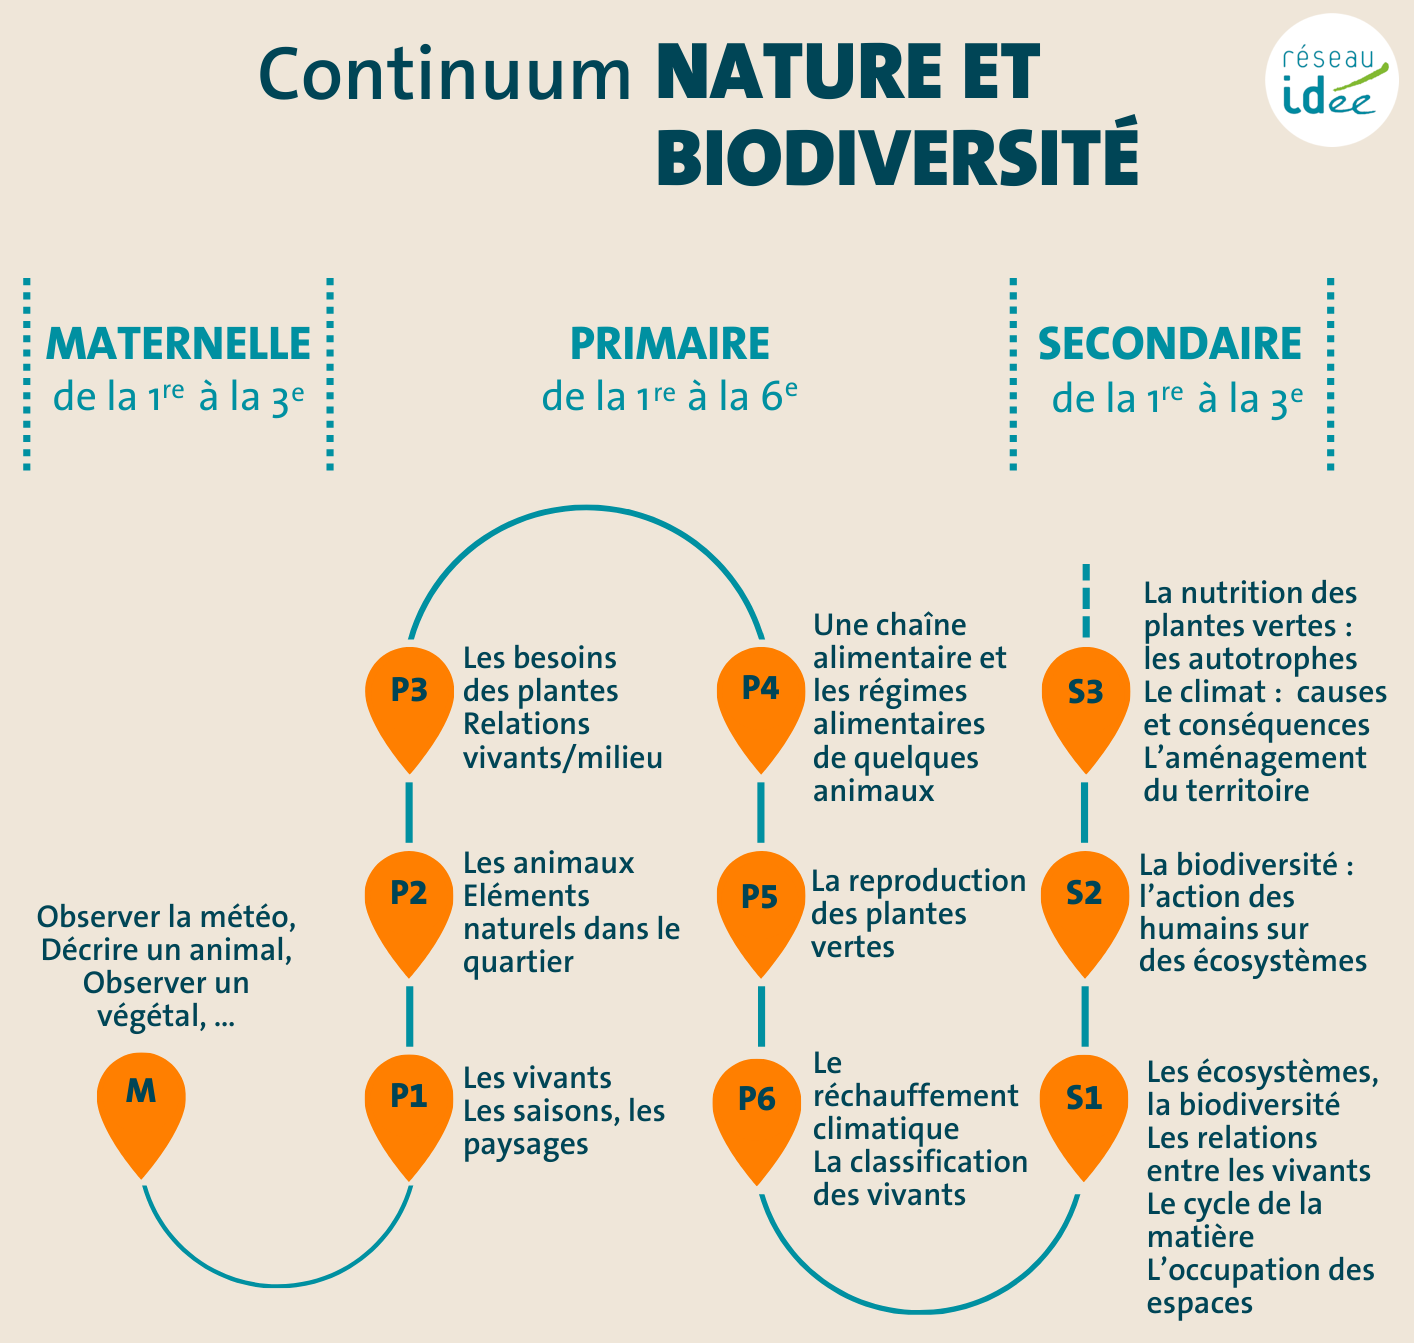 Continuum Nature et Biodiversité